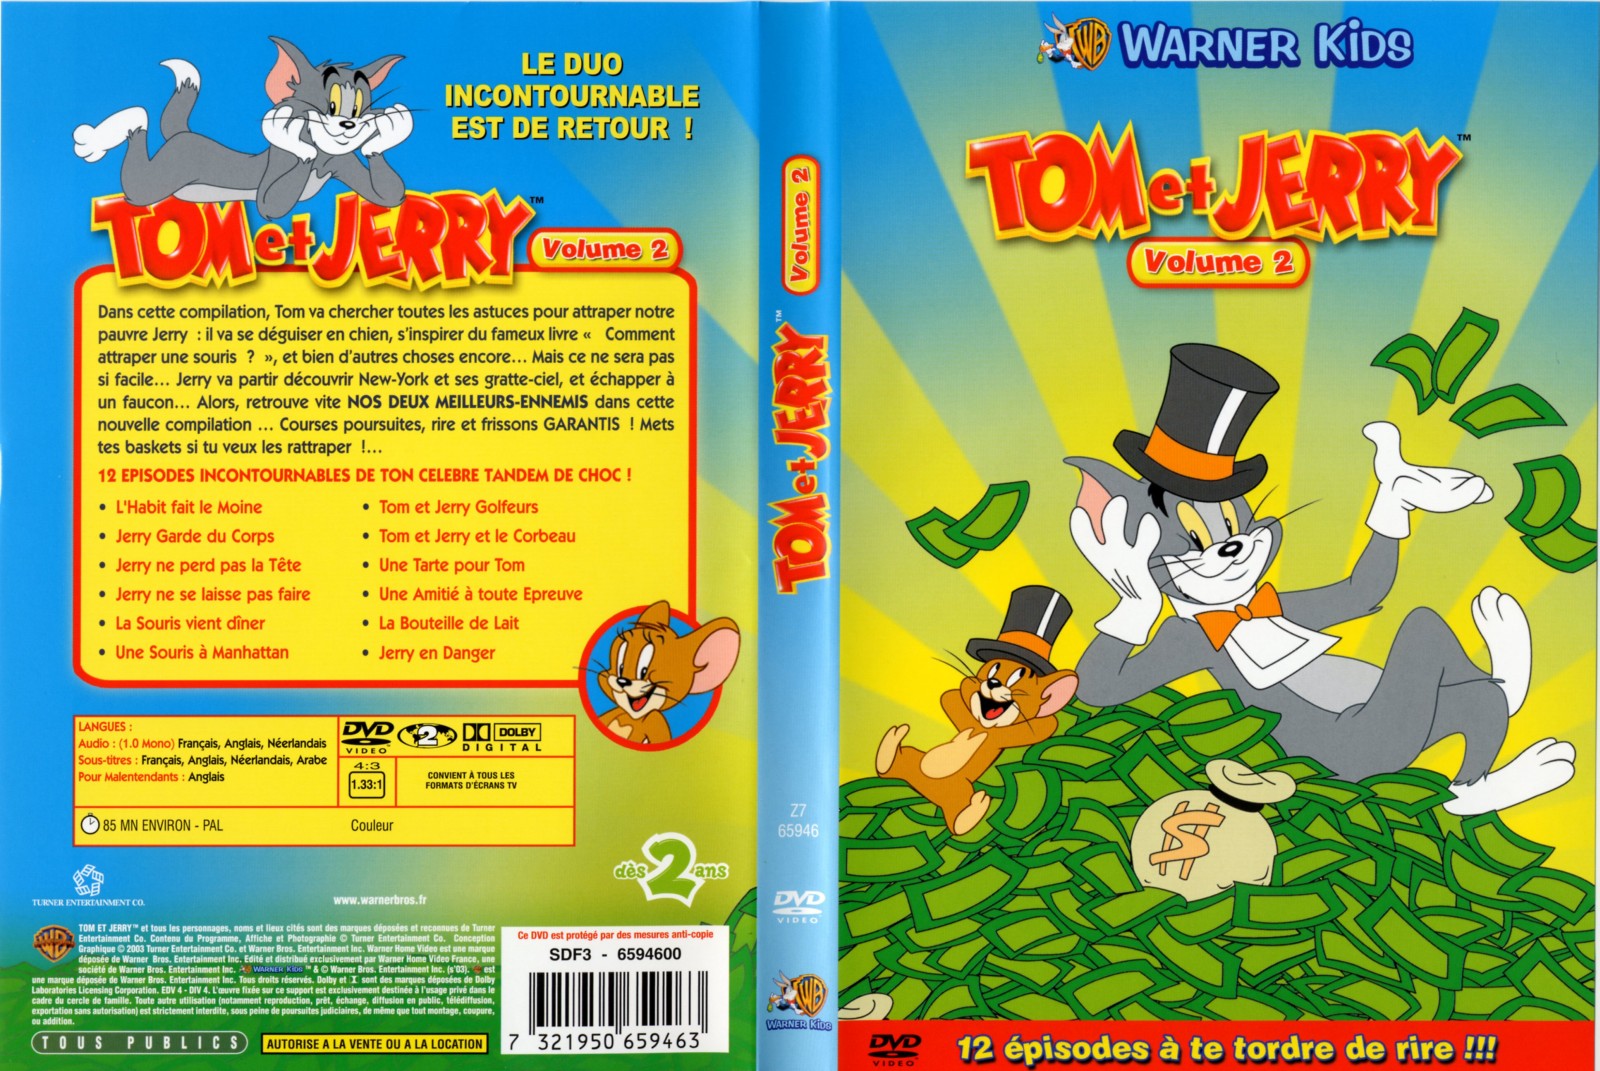 Jaquette DVD Tom et Jerry vol 2